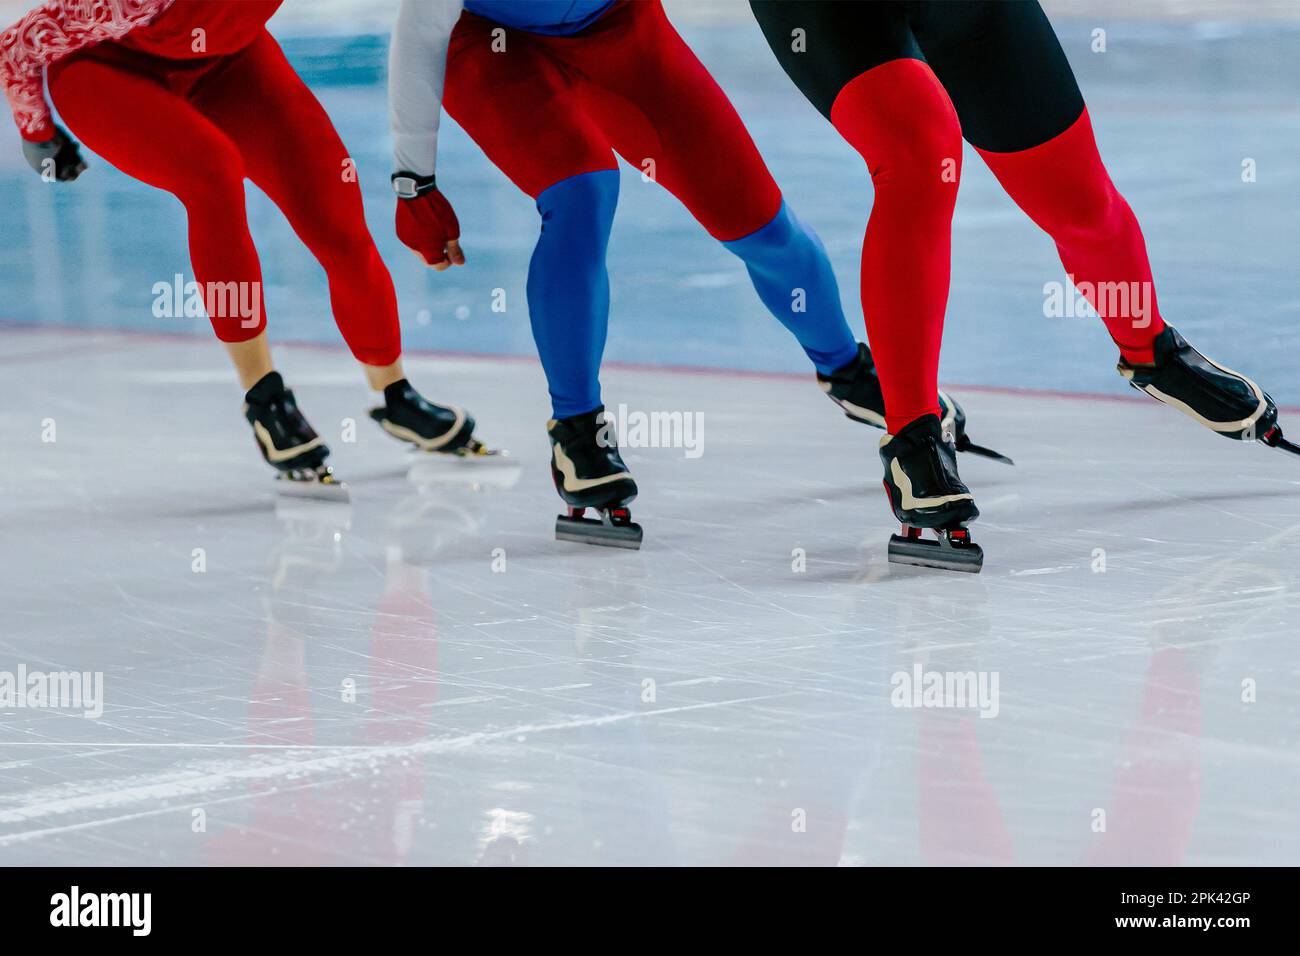 trois patineurs masculins courent ensemble la course de patinage de vitesse d'échauffement, les jeux de sports d'hiver Banque D'Images